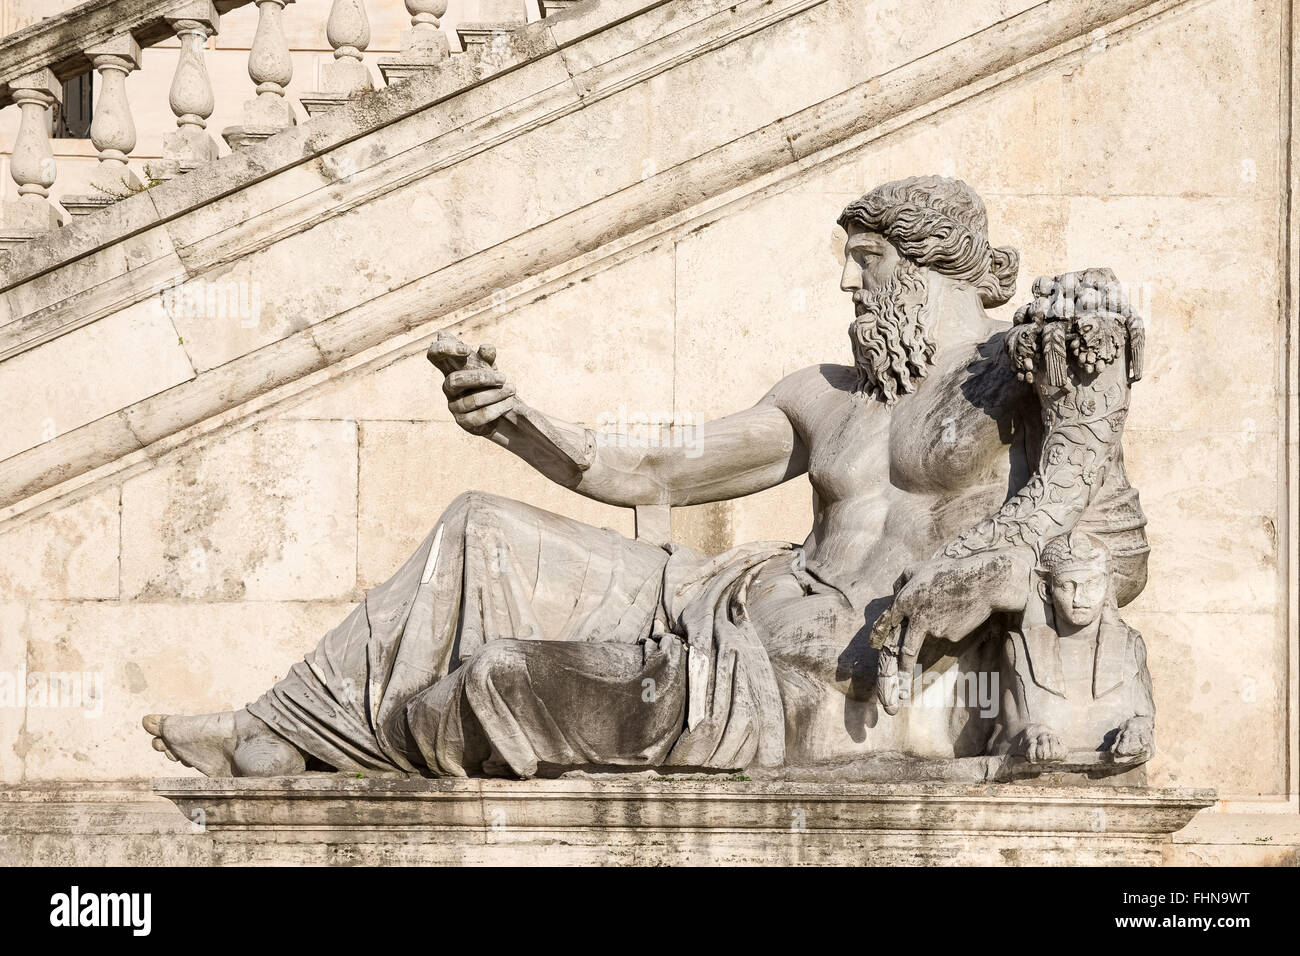 Antico romano statua raffigurante il dio del fiume Nilo. Situato nella Piazza del Campidoglio a Roma, Italia, quarto secolo. Foto Stock